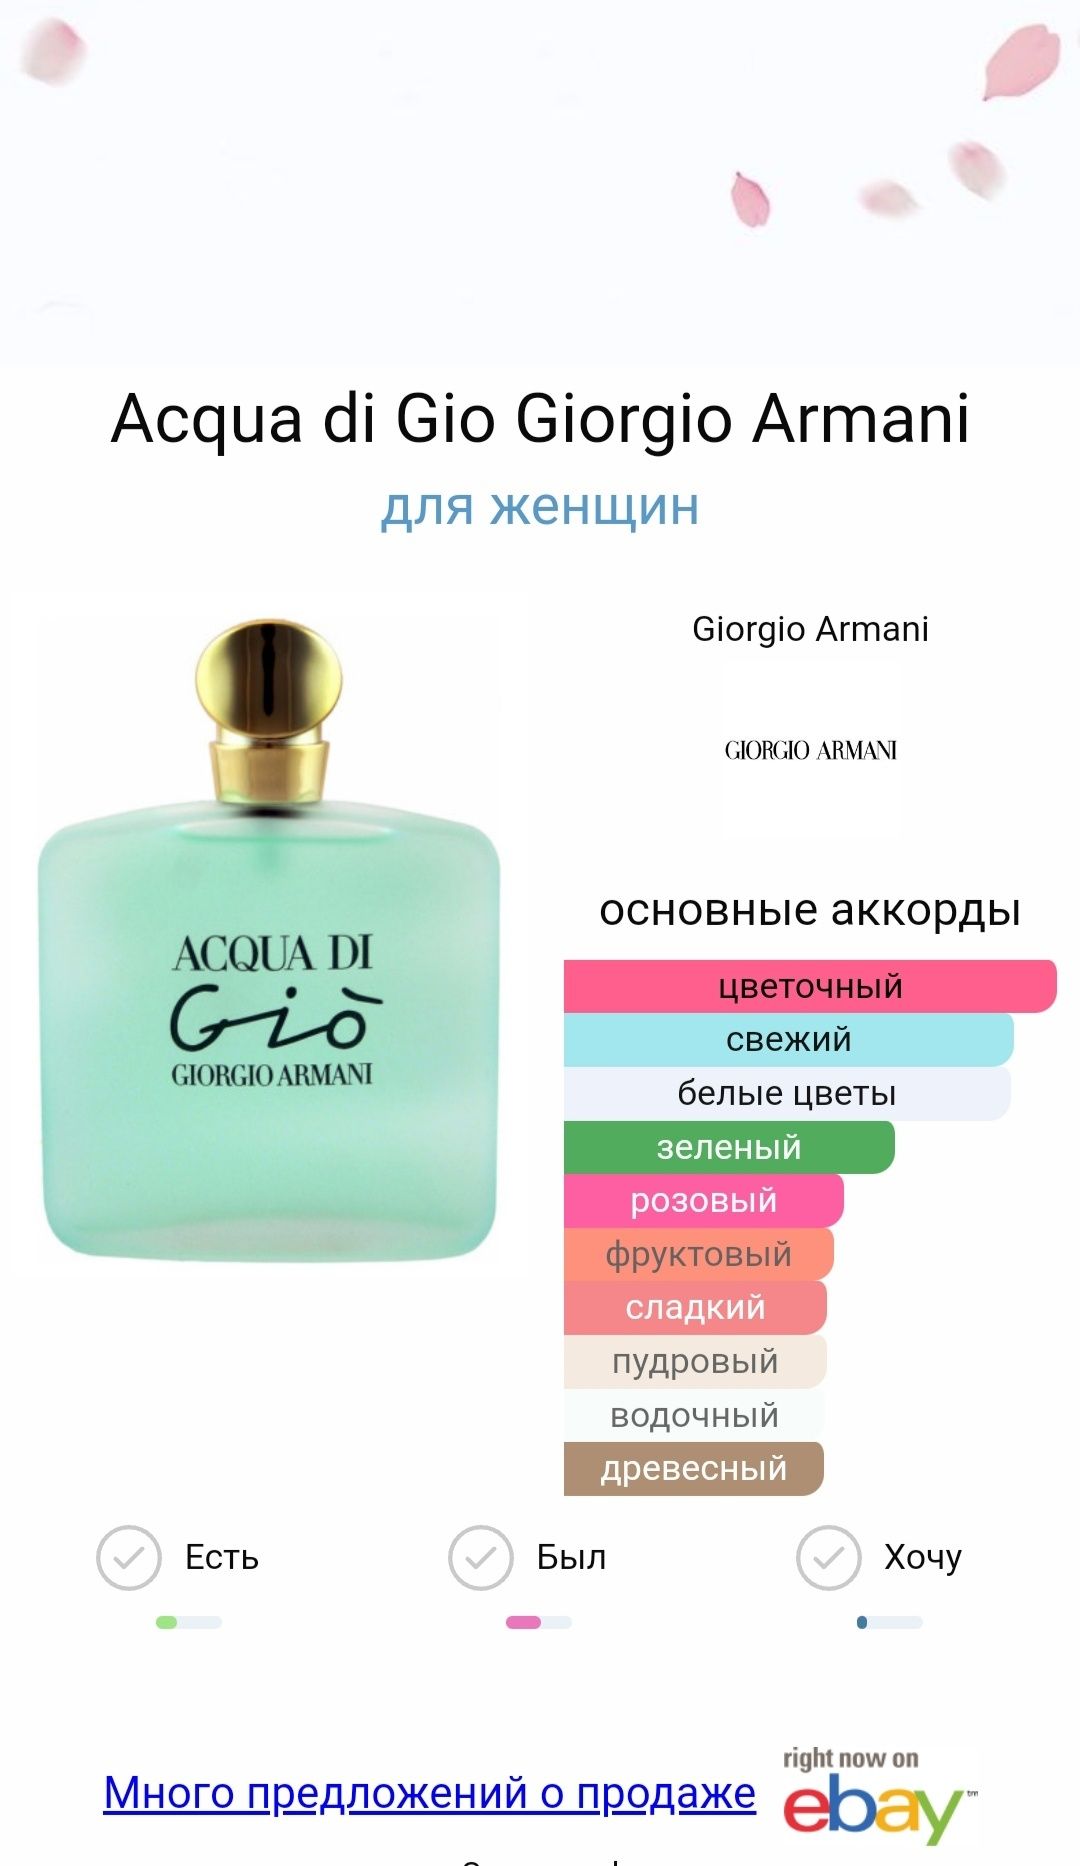 Acqua di Gioia Giorgio Armani  оригинал